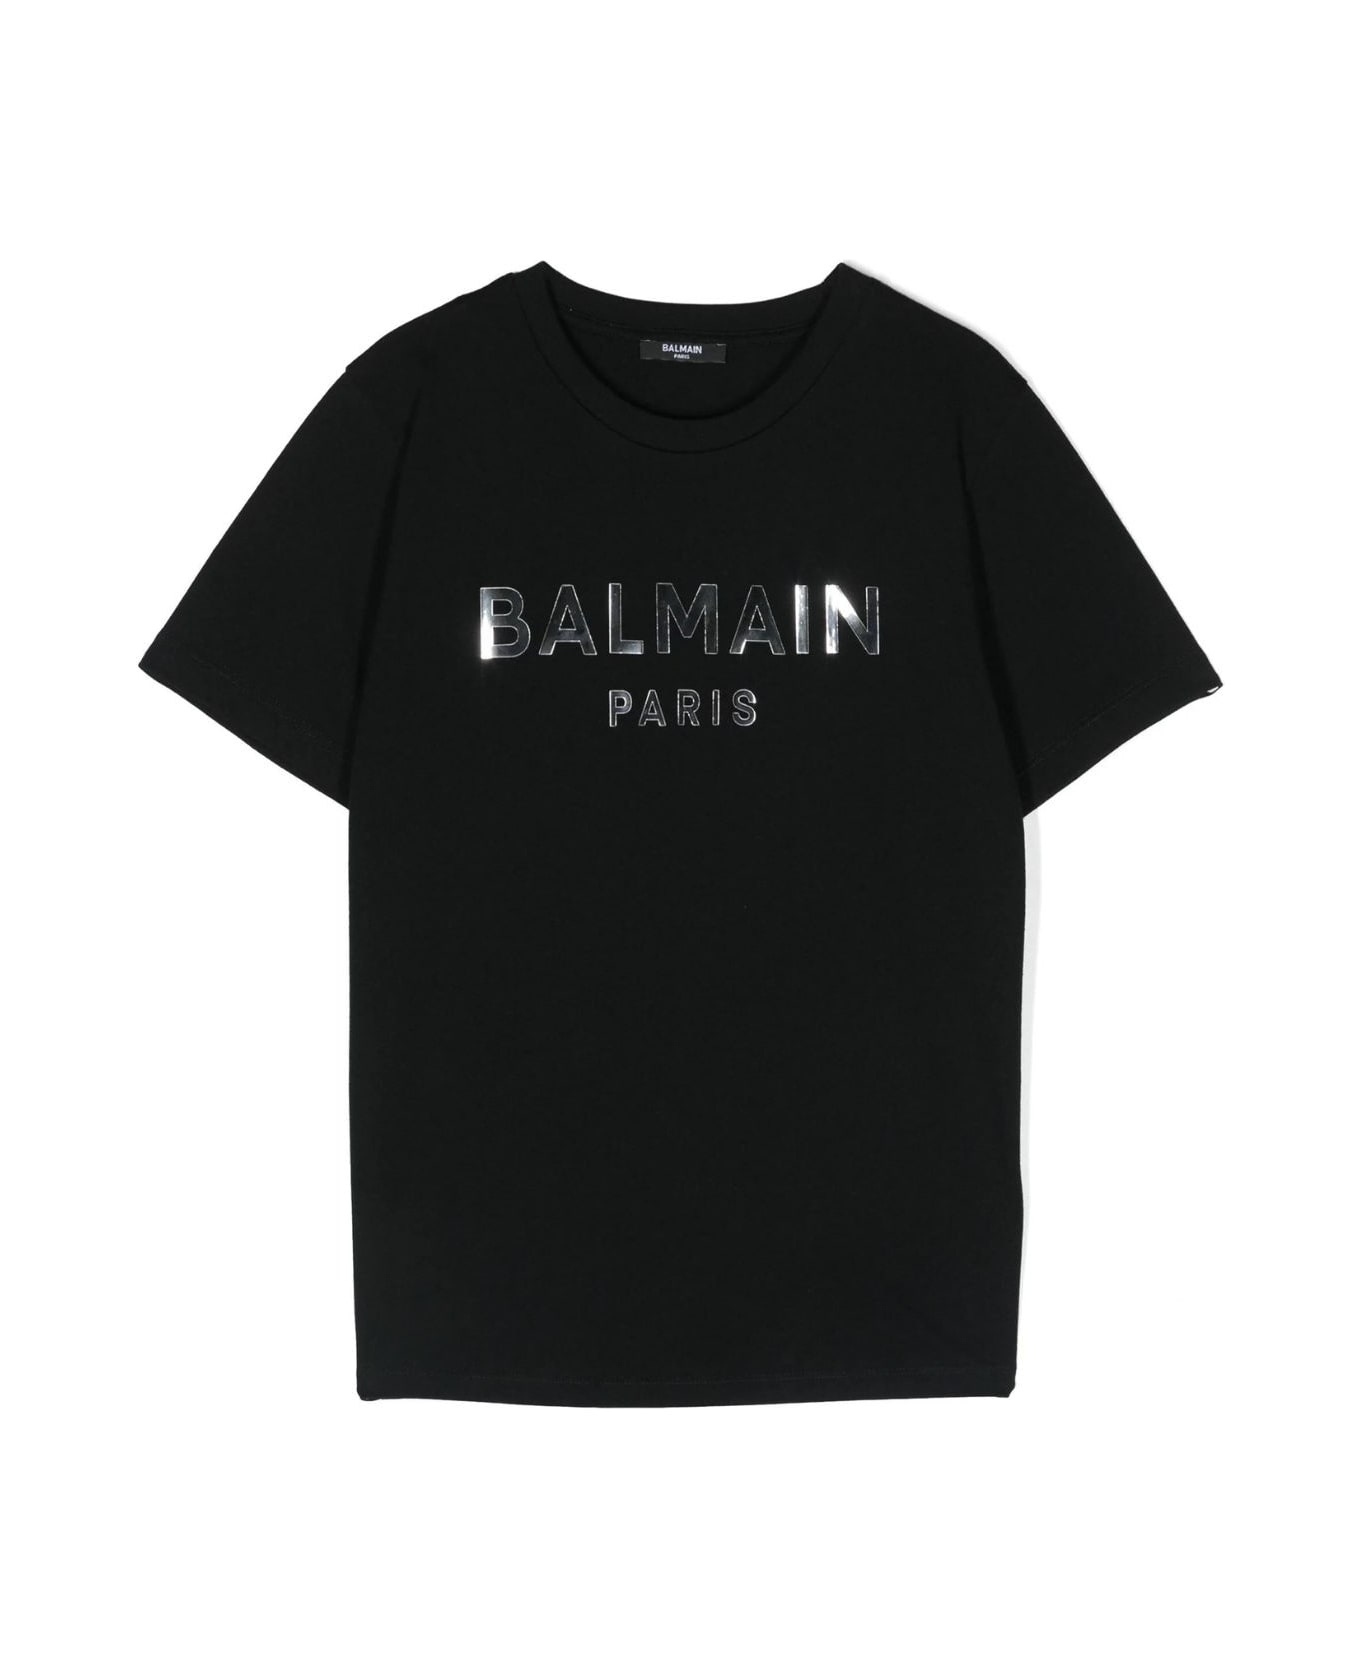 Balmain T Shirt - Ag Black Silver